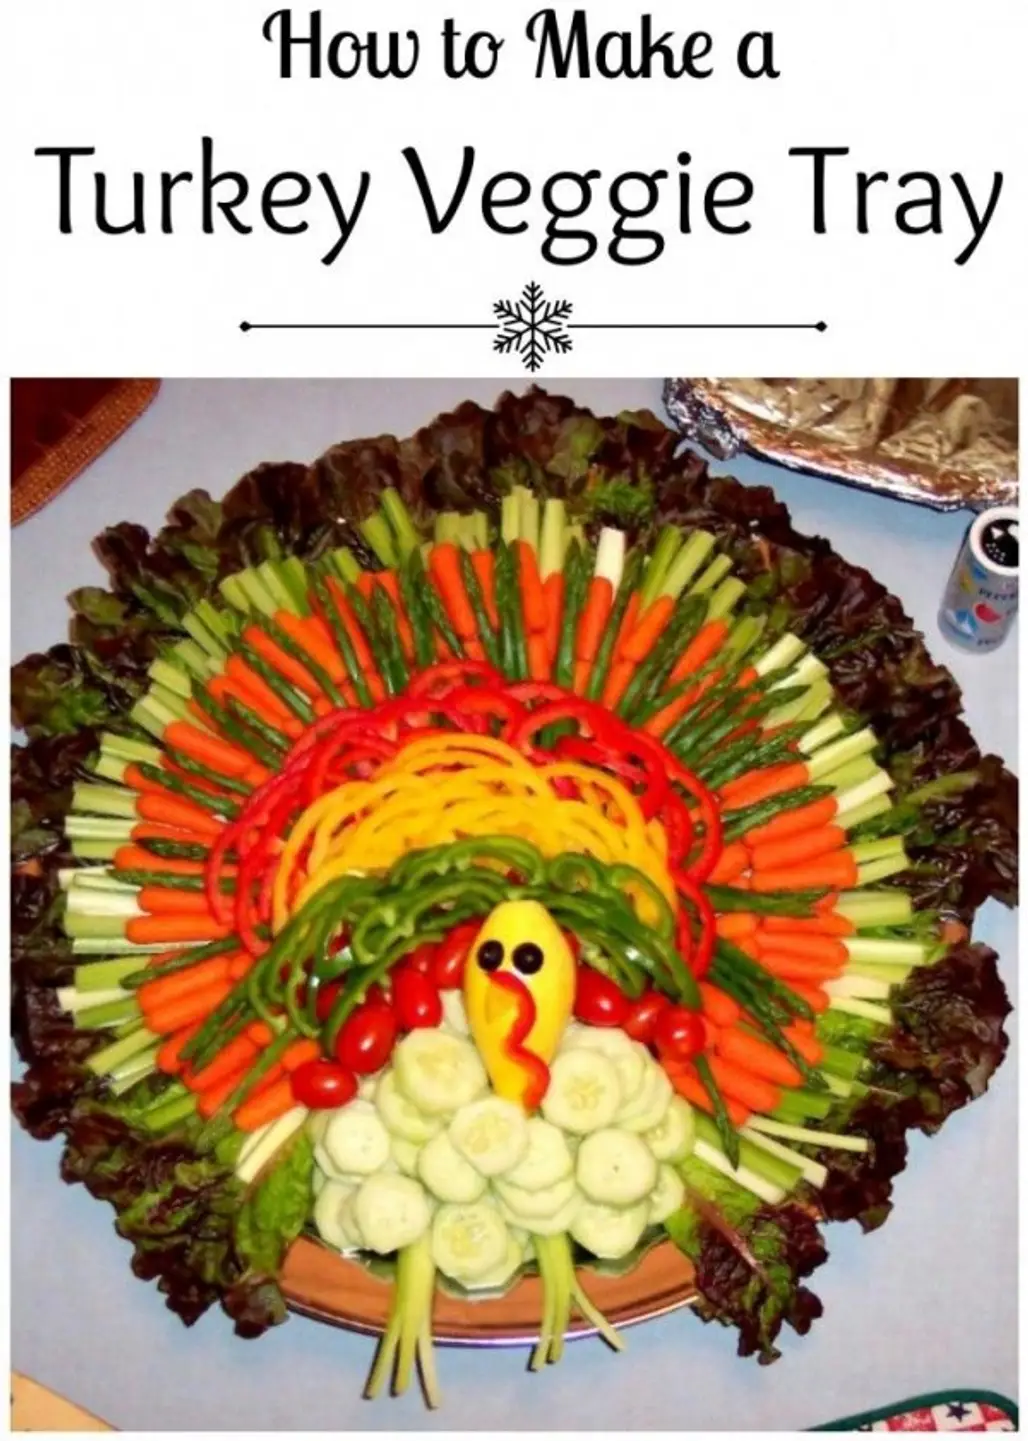 Veggie Turkey Tray